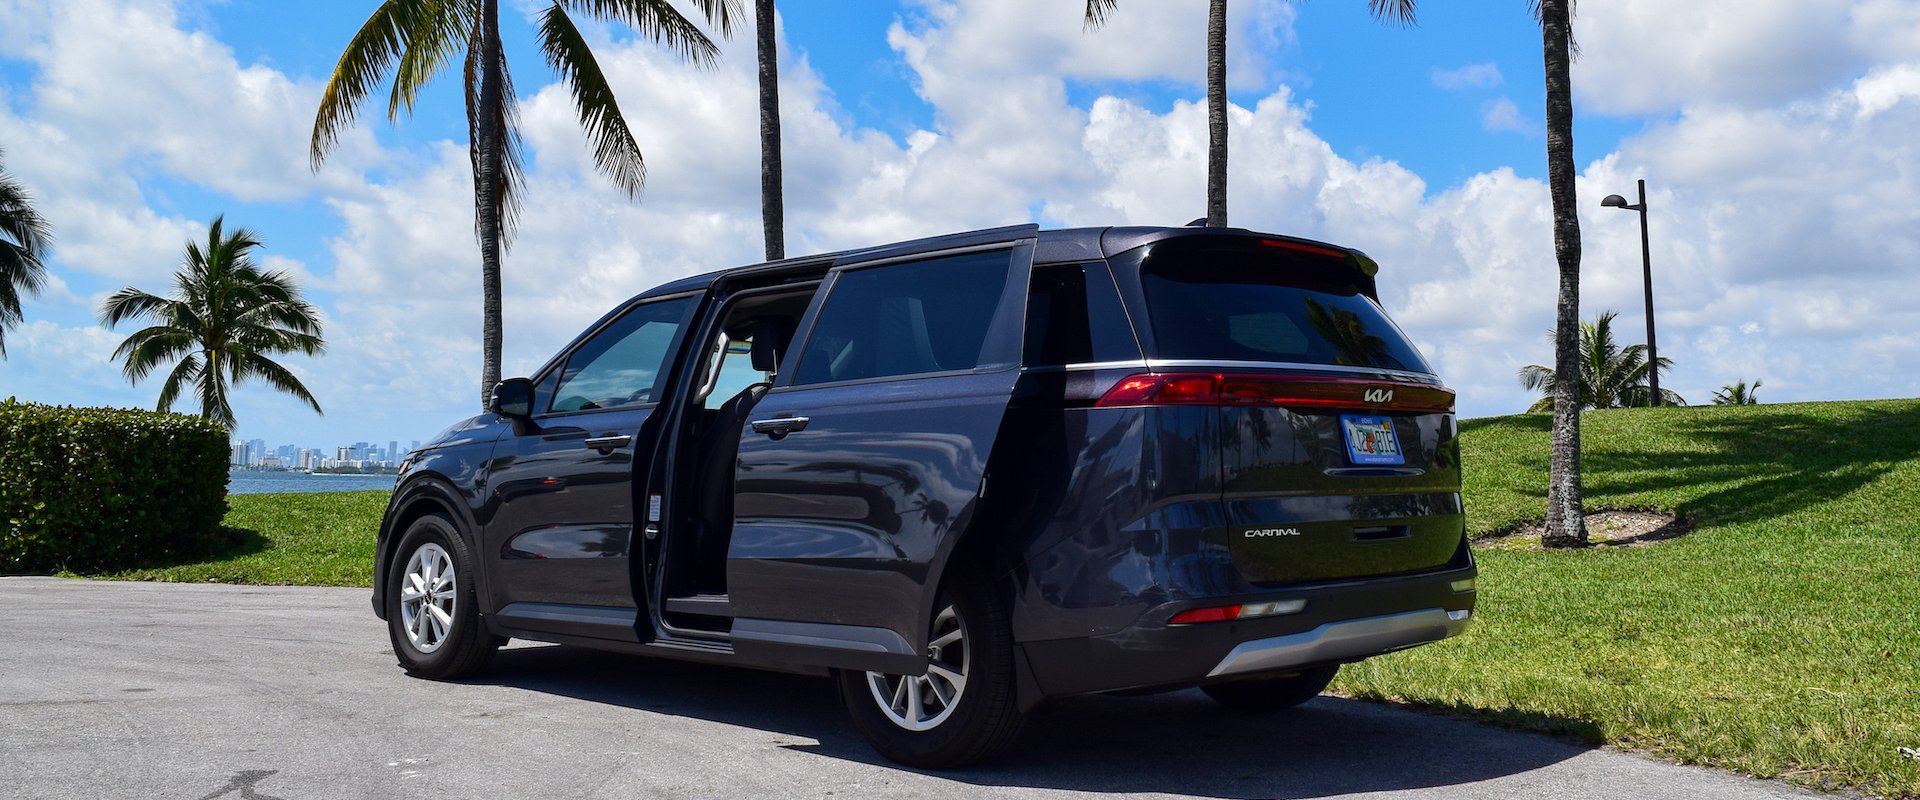 minivan Ebes Alquiler de coches en Miami